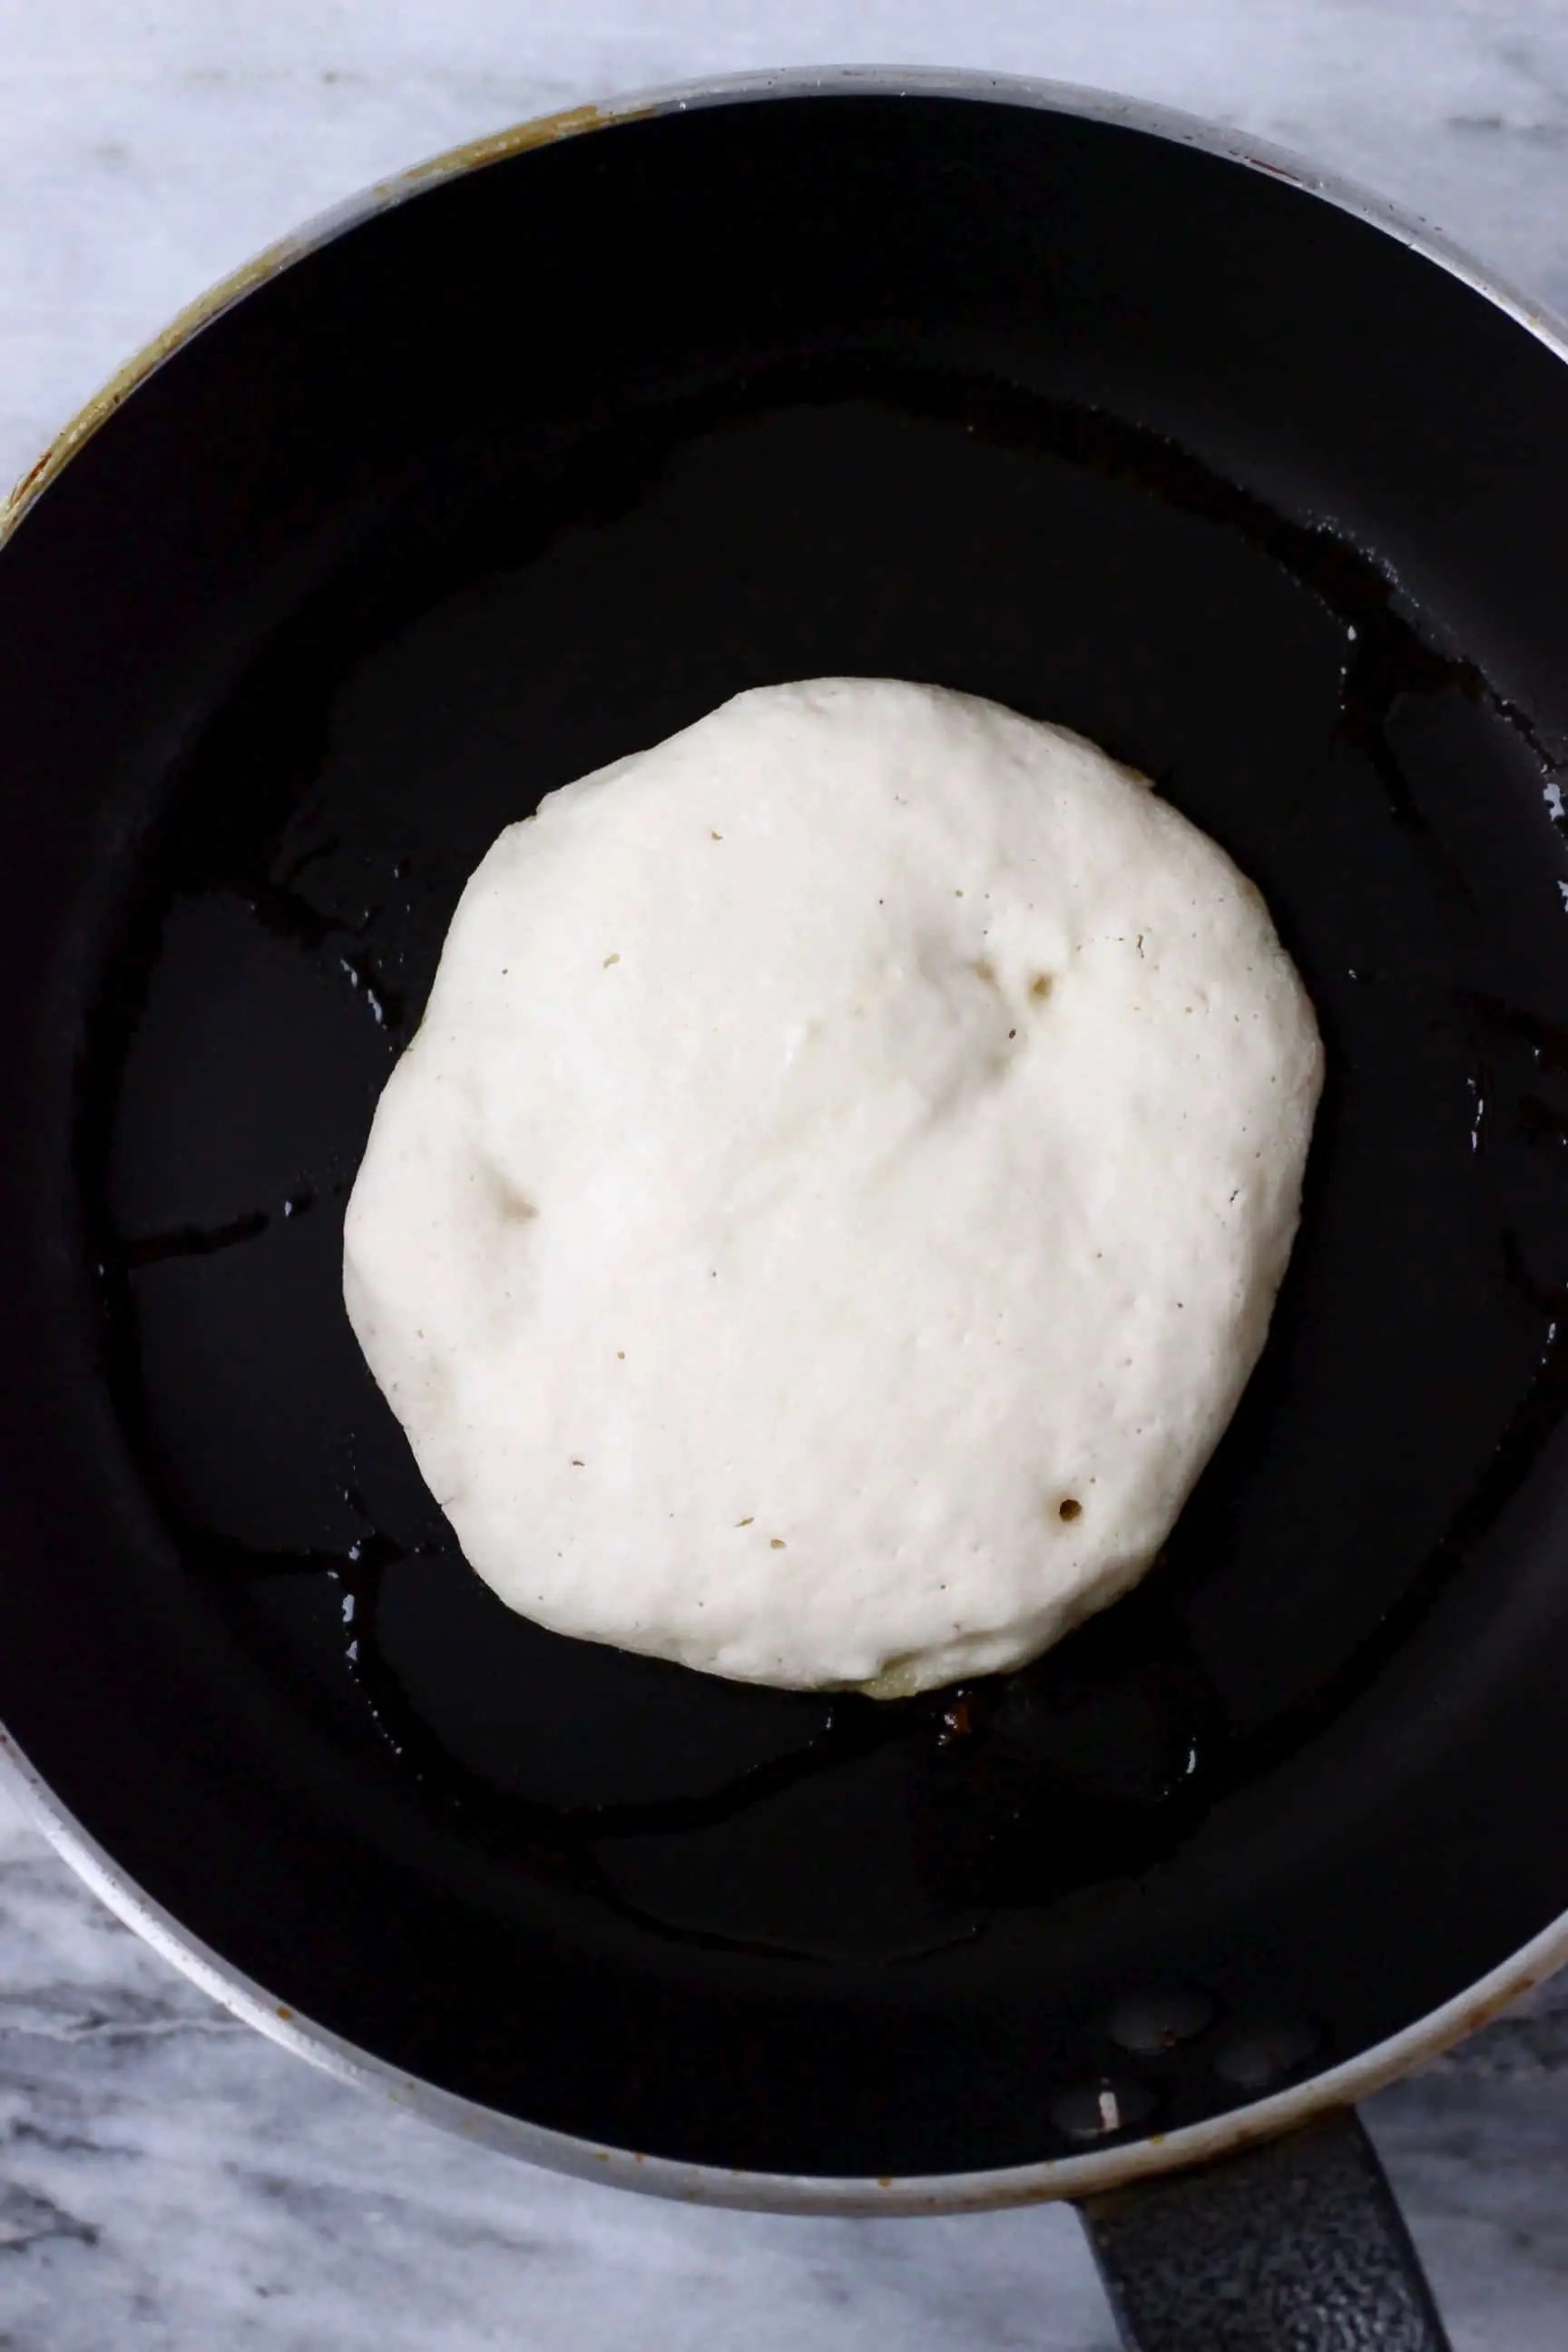 A white gluten-free vegan pancake being cooked in a black frying pan